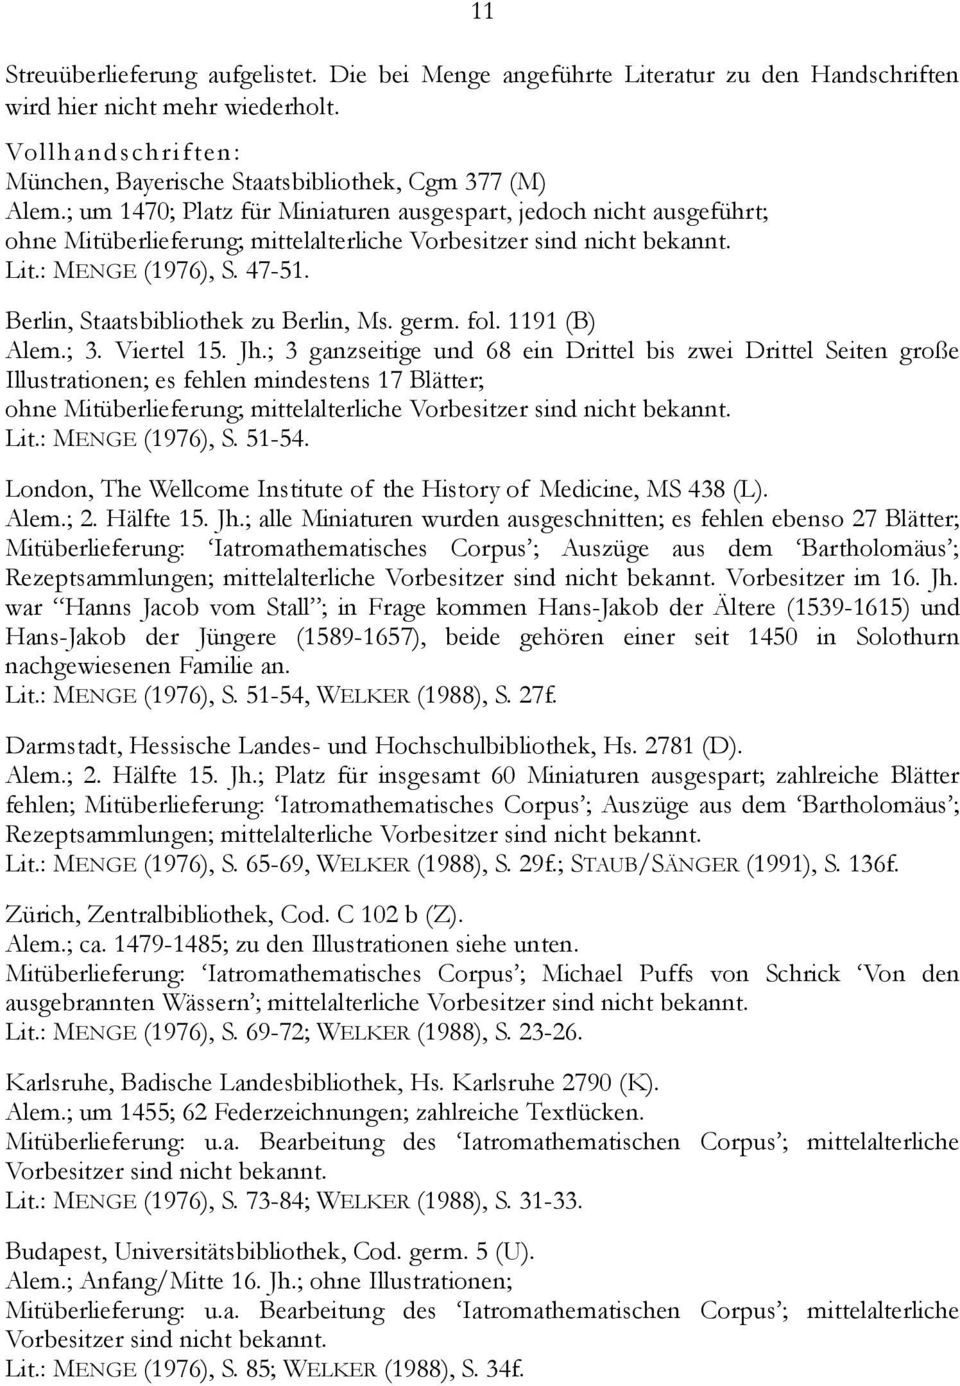 Heinrich Laufenberg Regimen Der Gesundheit Pdf Free Download